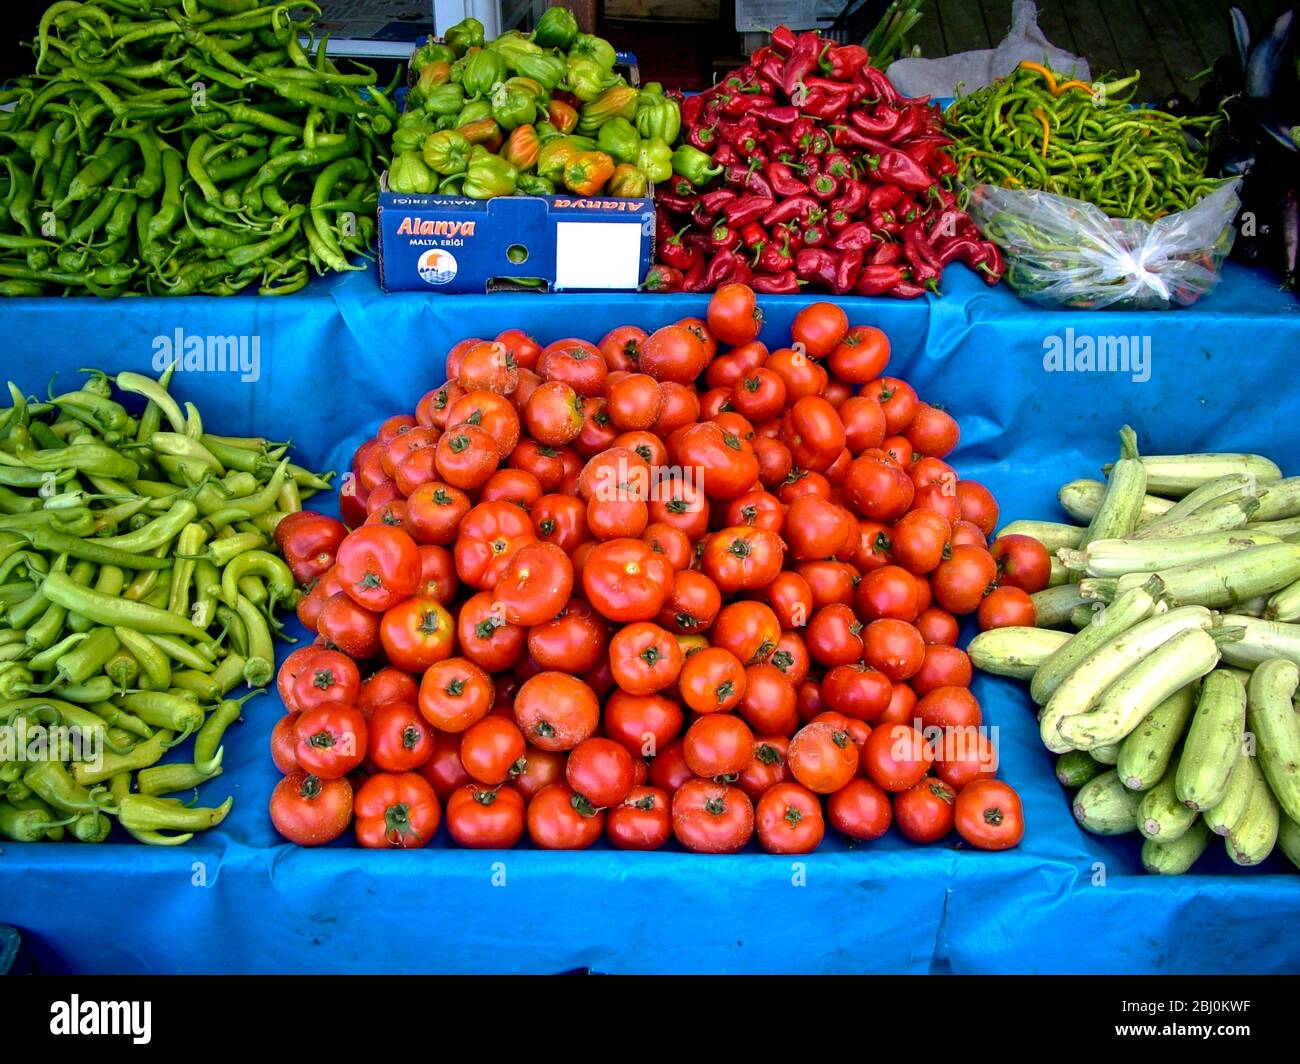 Selezione di verdure fresche - pomodori, cetrioli e diverse varietà di peperoni in bancarella di mercato fuori negozio a Dalayan, Anatolia, Turke meridionale Foto Stock